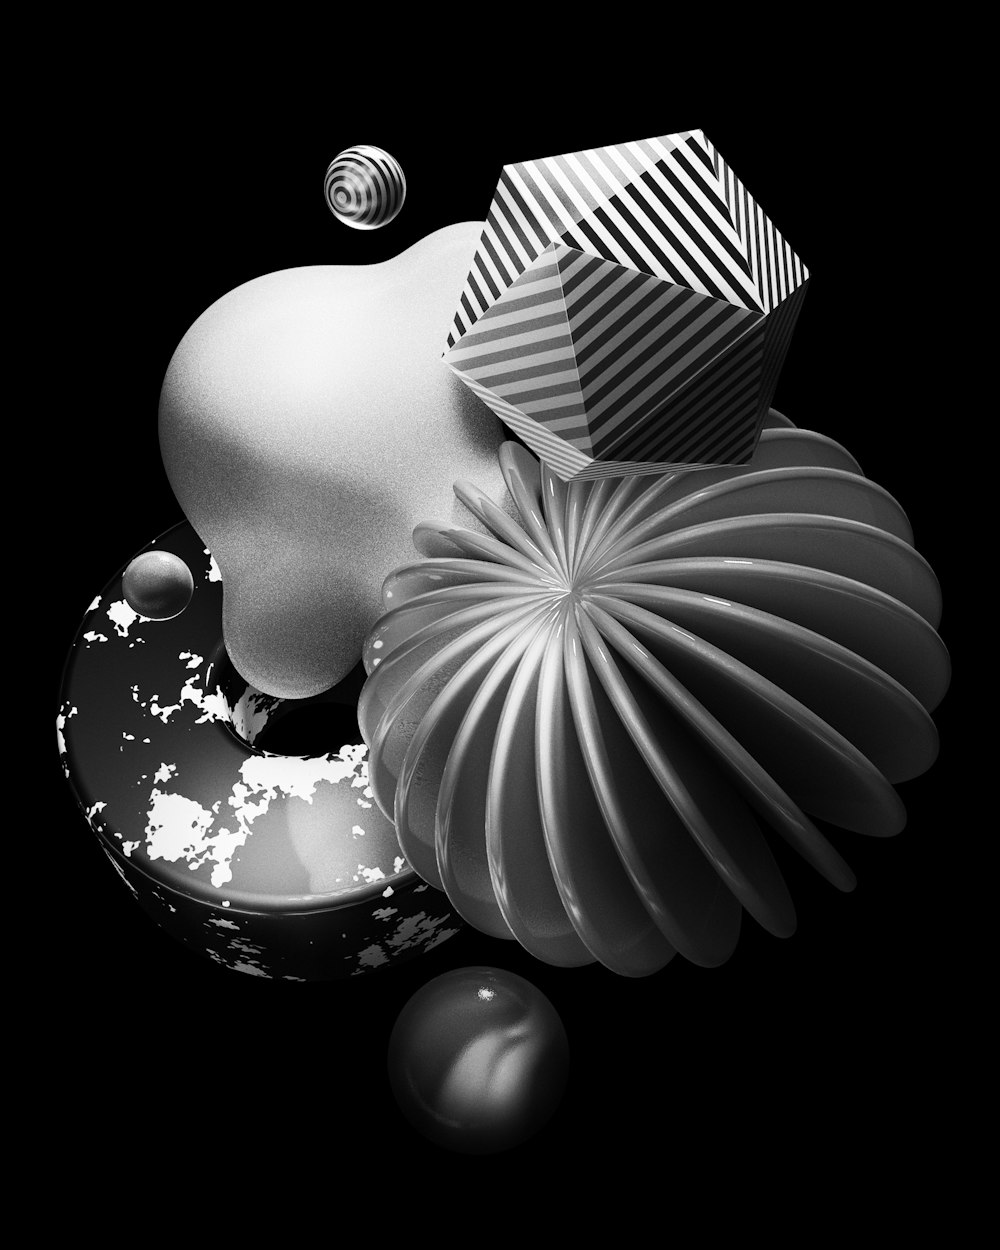 Una foto en blanco y negro de un jarrón y algunas bolas